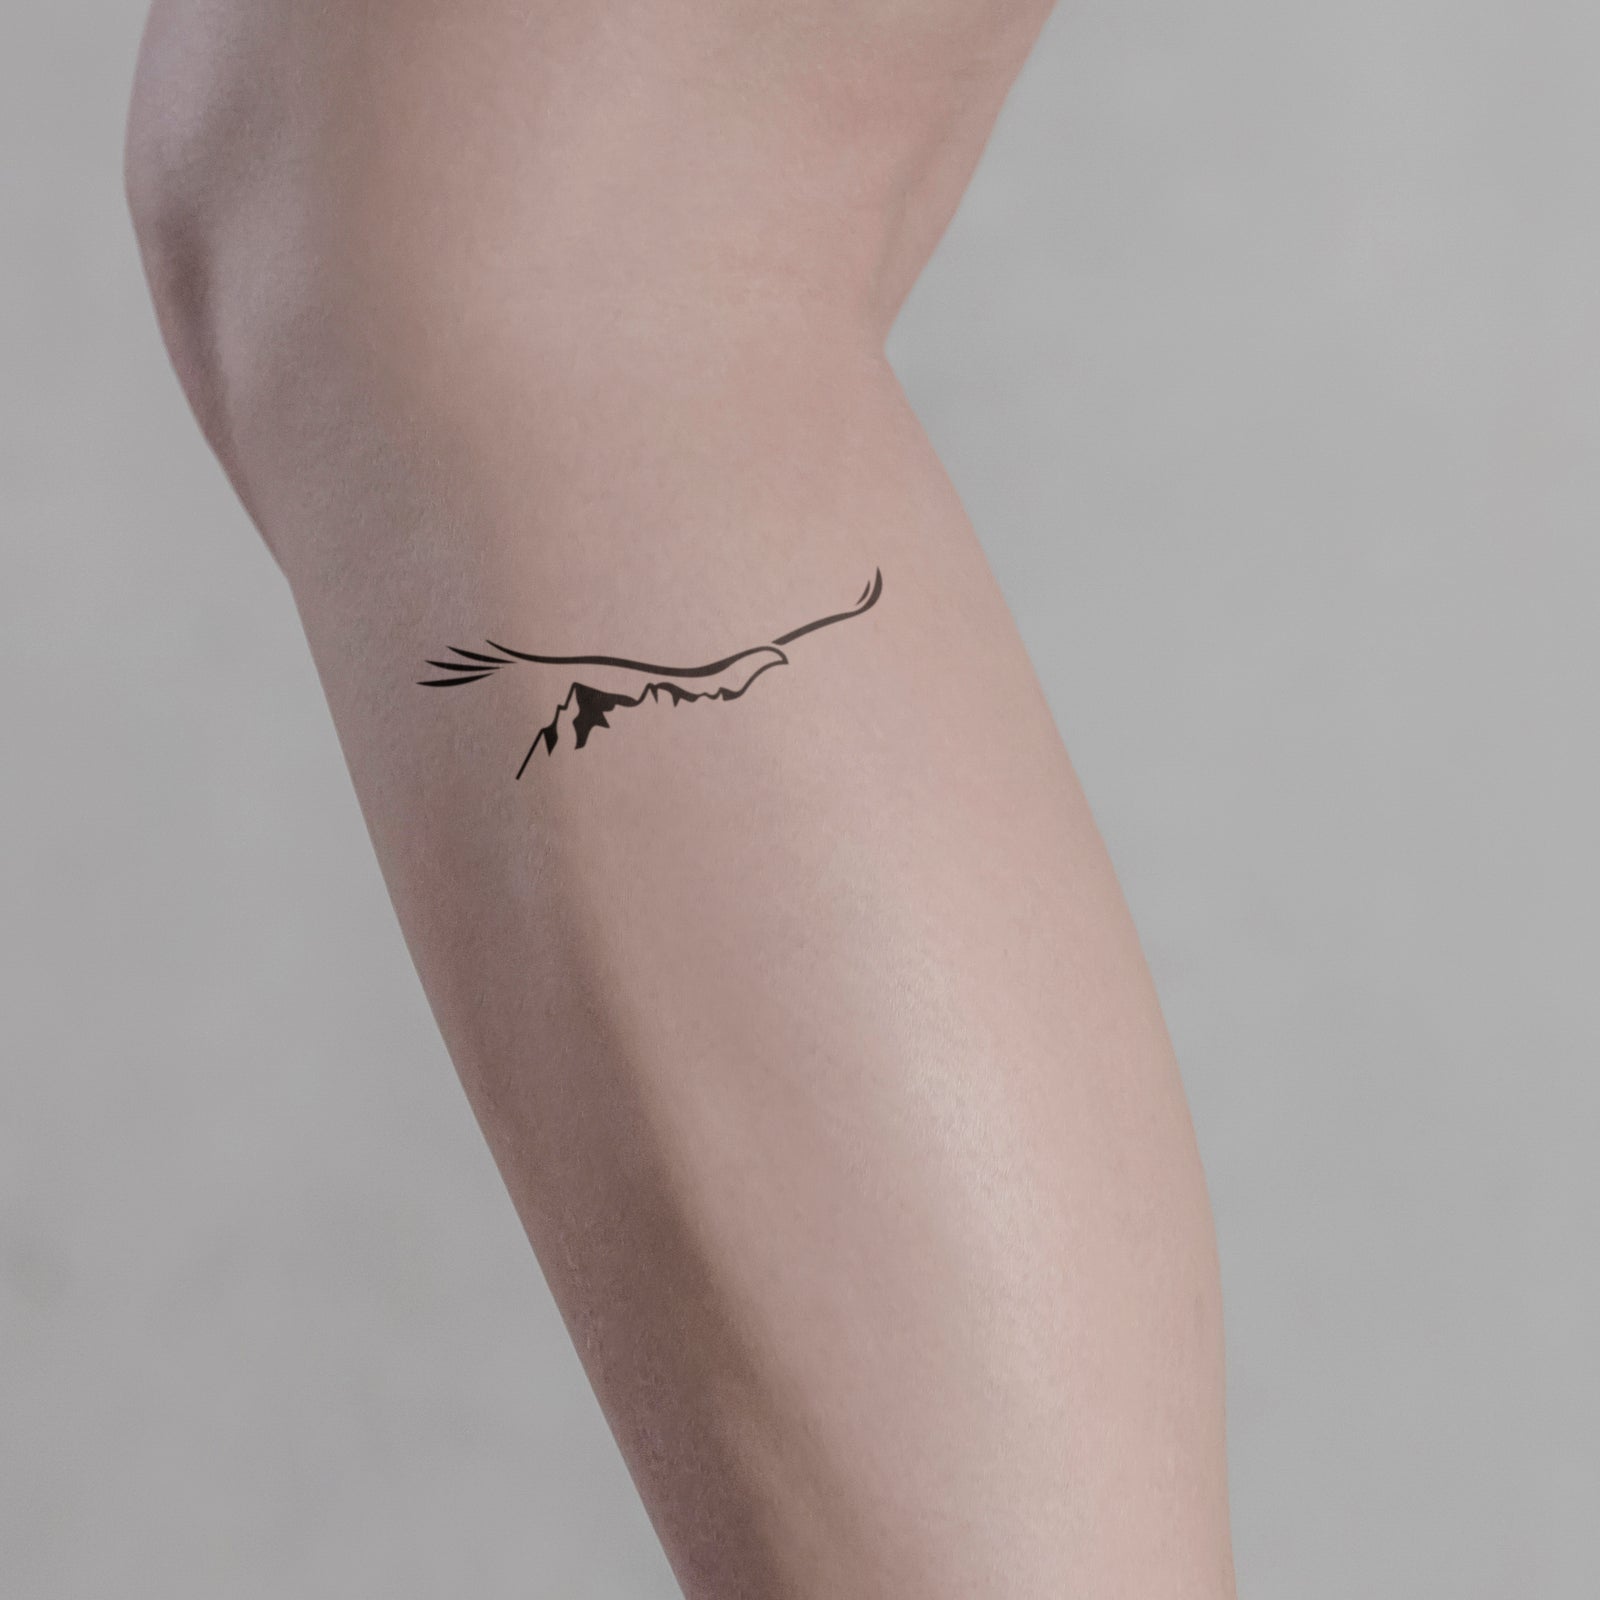 Ossian Staraj Tattoo - Mother Nature 🌲 tattoo half healed half fresh.  Thanks a lot for coming Florian ! #tattoo #tatouage #ttt #tatts #tattoos  #ink #inked #foresttattoo #naturetattoo #inkjecta #tattoorealism  #realistictattoo #blackandgreytattoo ...